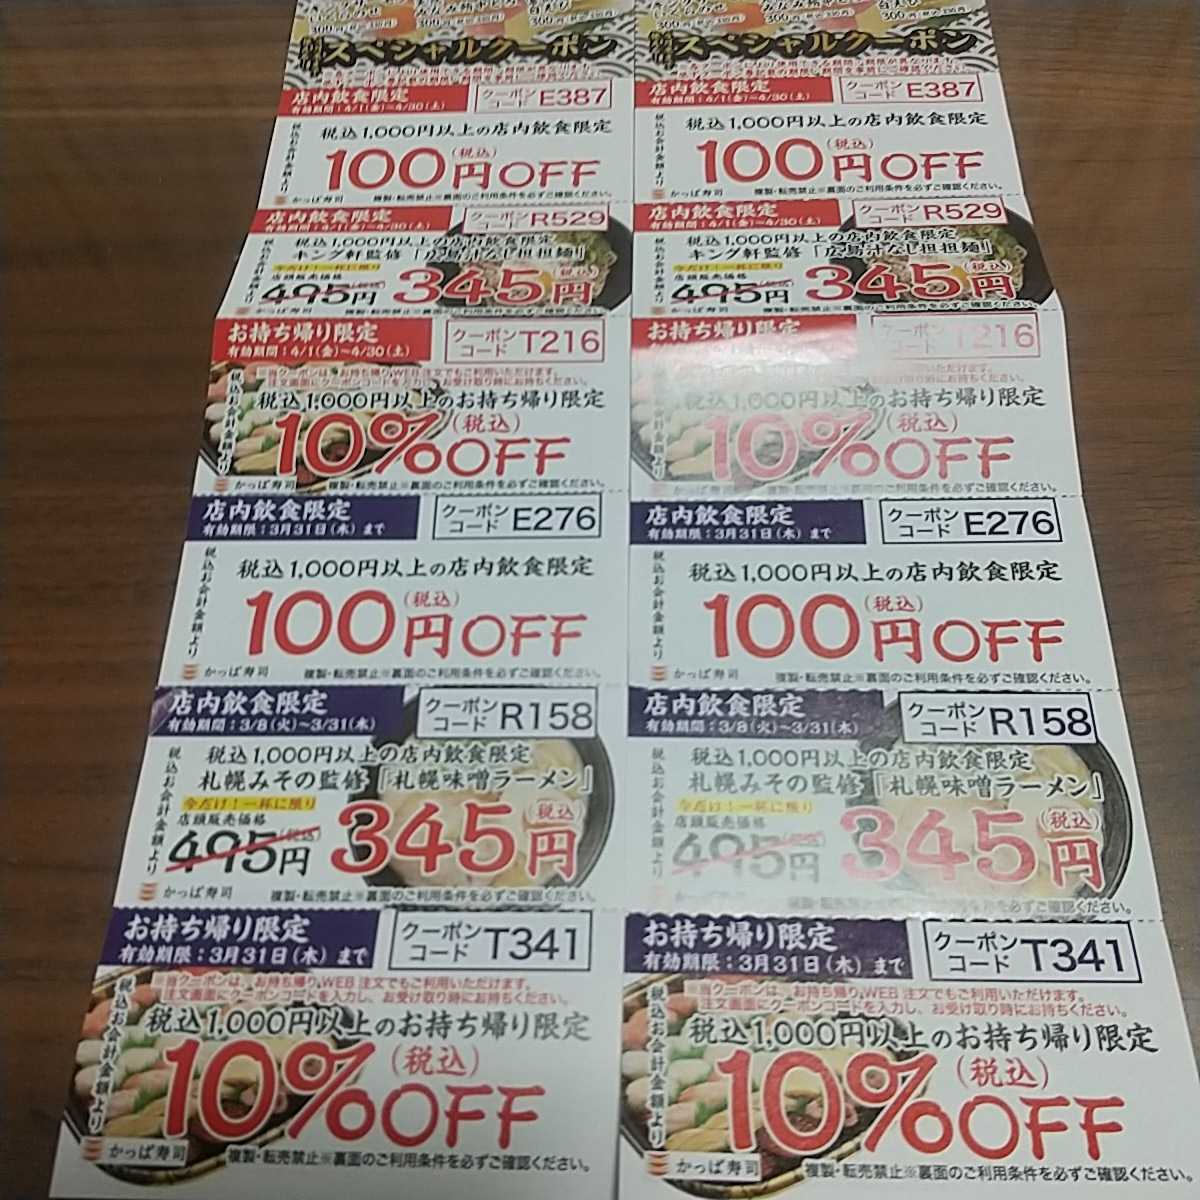 最安 専門店 かっぱ寿司100円offと割り引き券